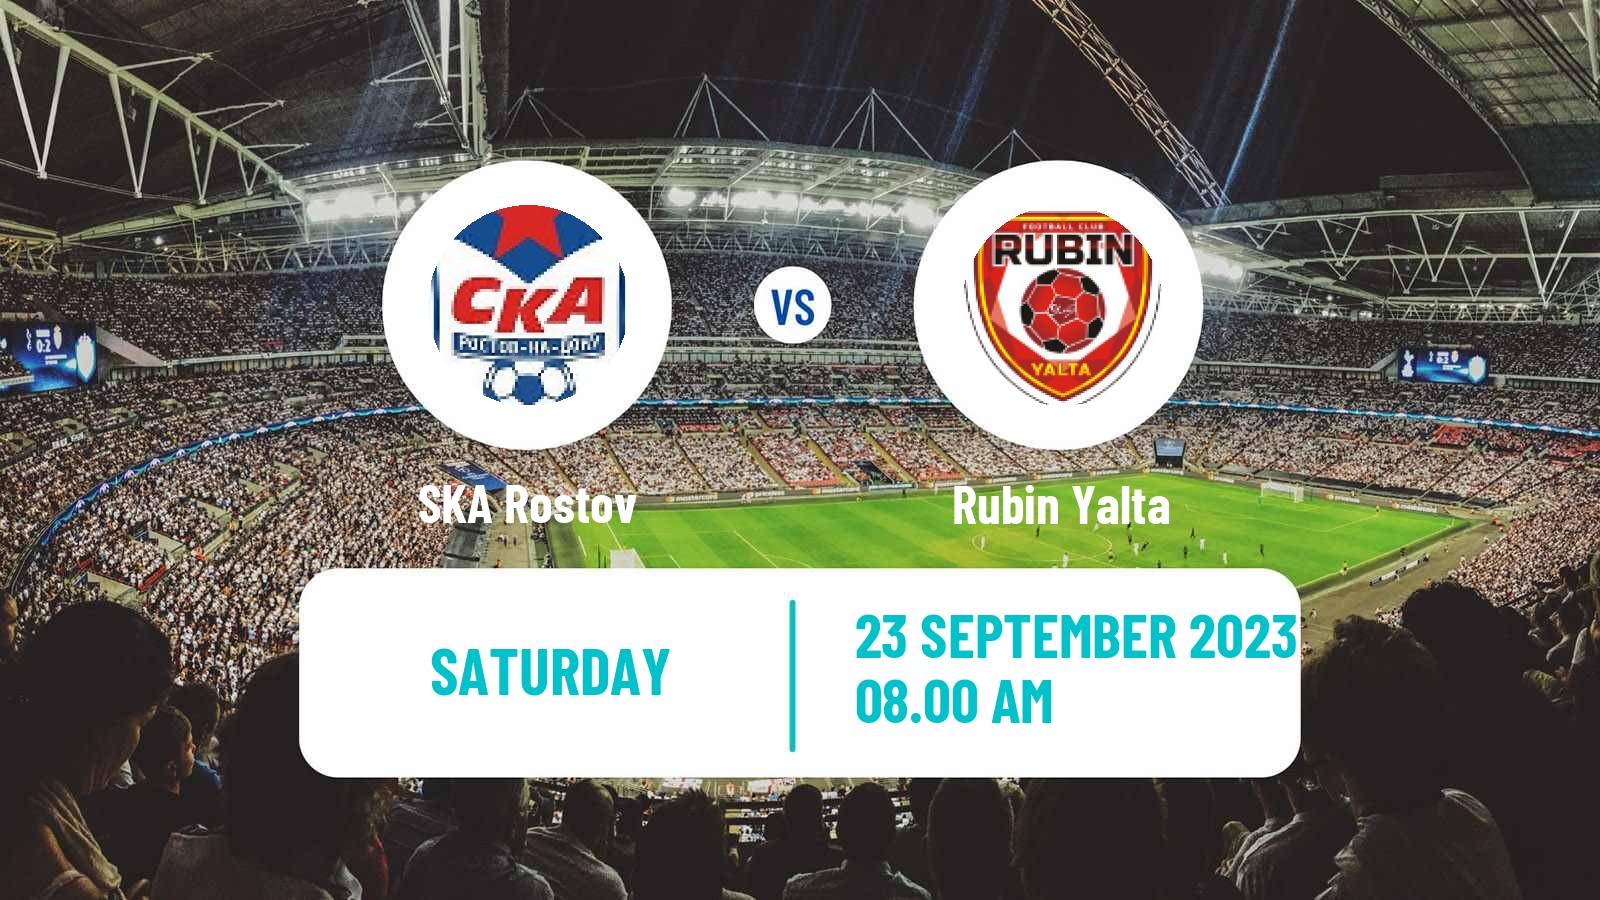 Soccer FNL 2 Division B Group 1 SKA Rostov - Rubin Yalta